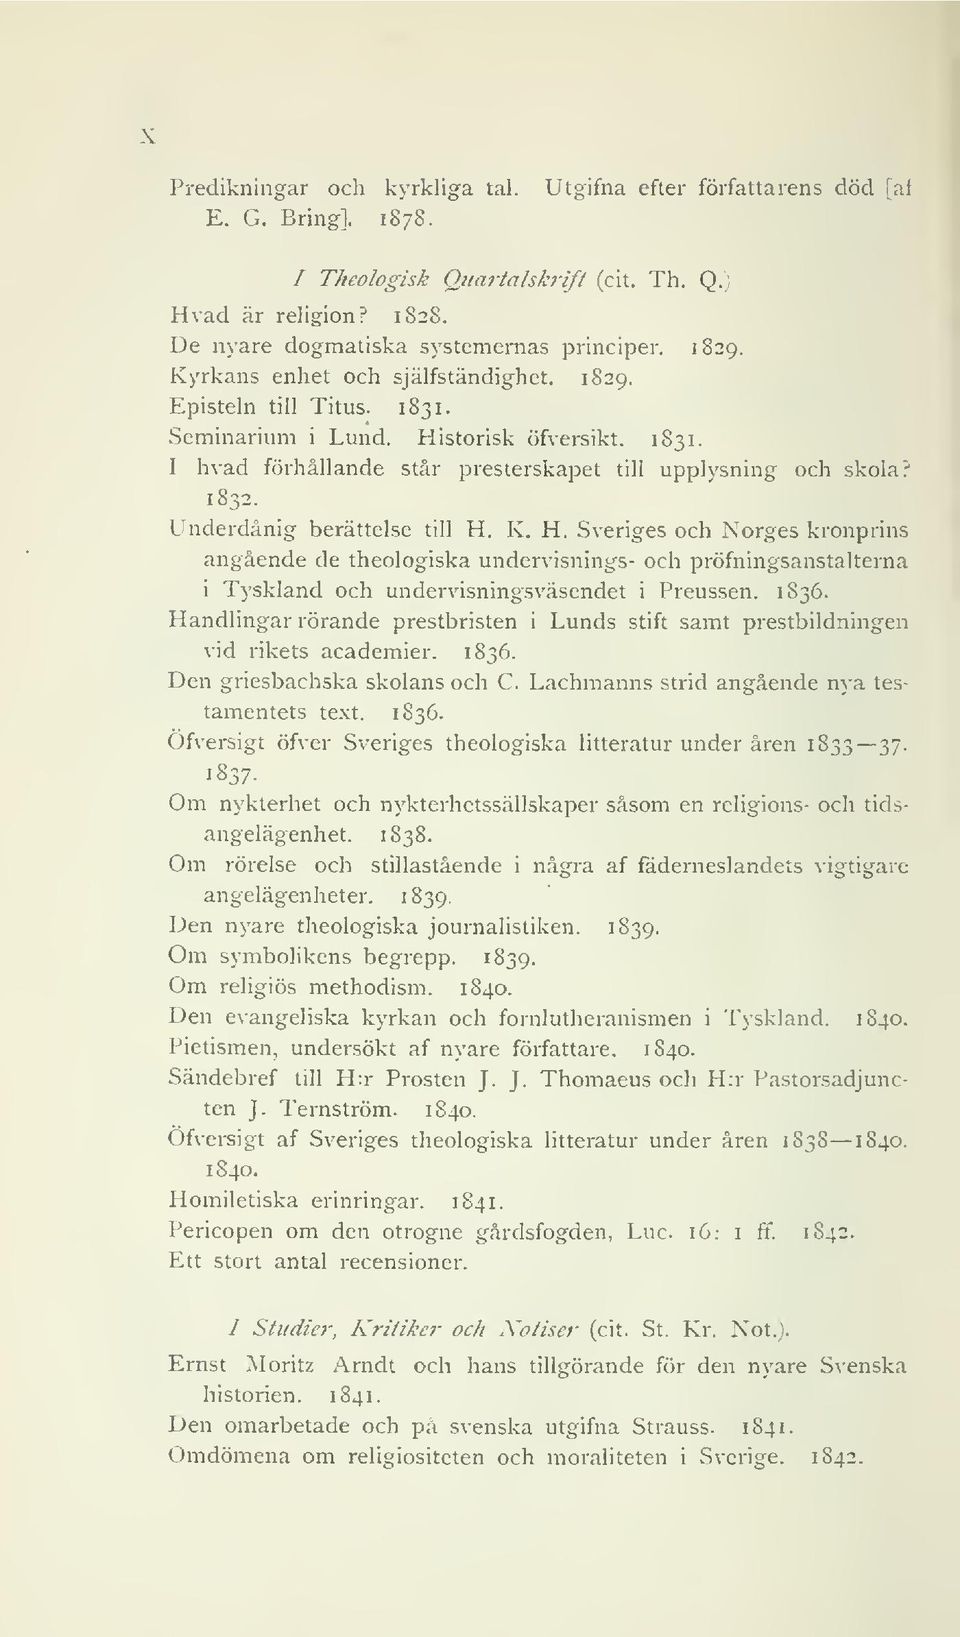 Underdånig berättelse till H. K. H. Sveriges och Norges kronprins angående de theologiska undervisnings- och pröfningsanstalterna i Tyskland och undervisningsväsendet i Preussen. 1836.